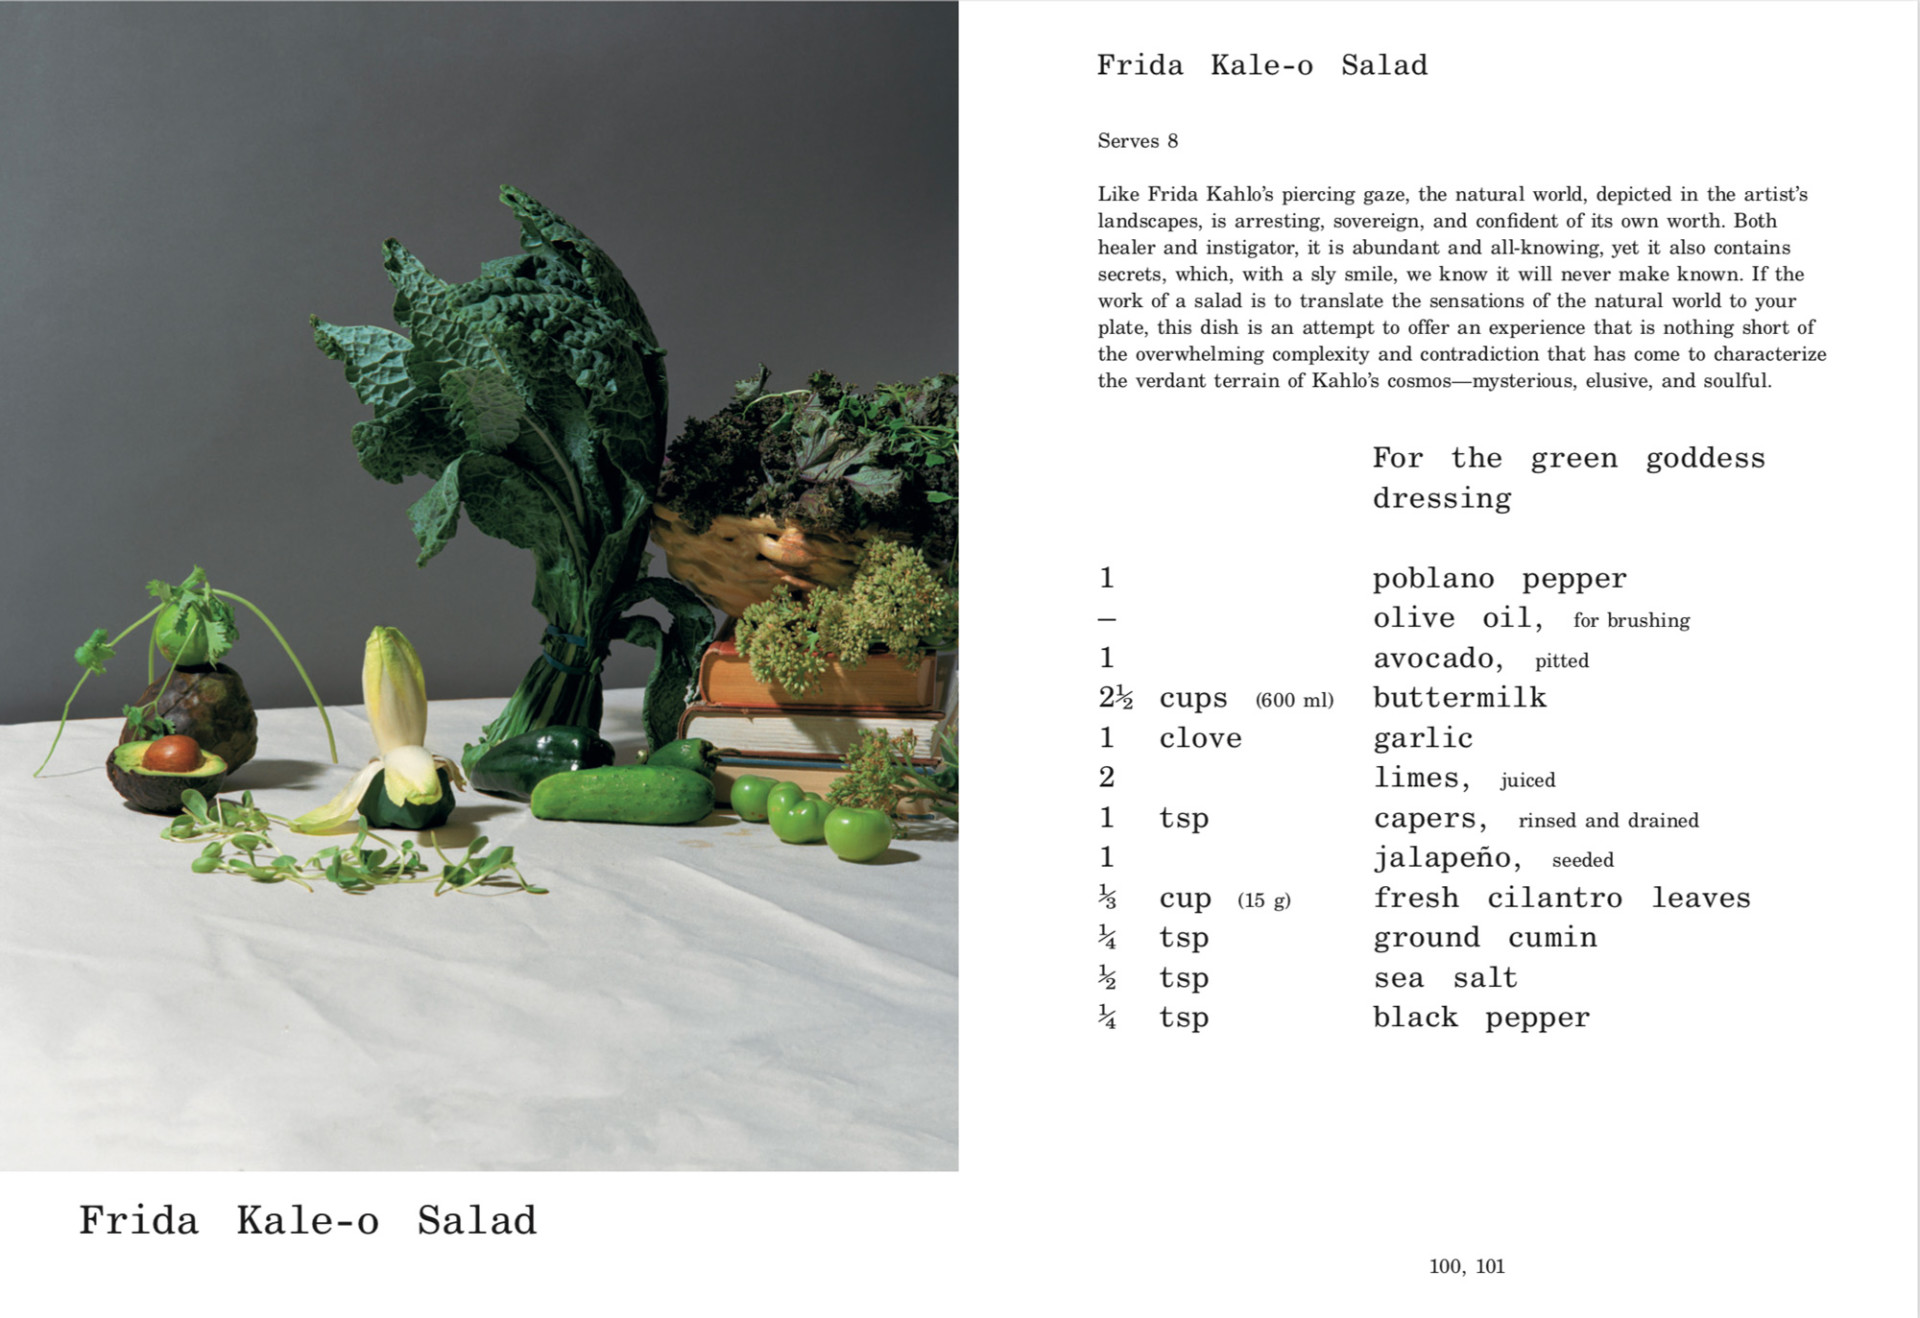 Egyedi szakácskönyv, amelyet művészek és designerek inspiráltak